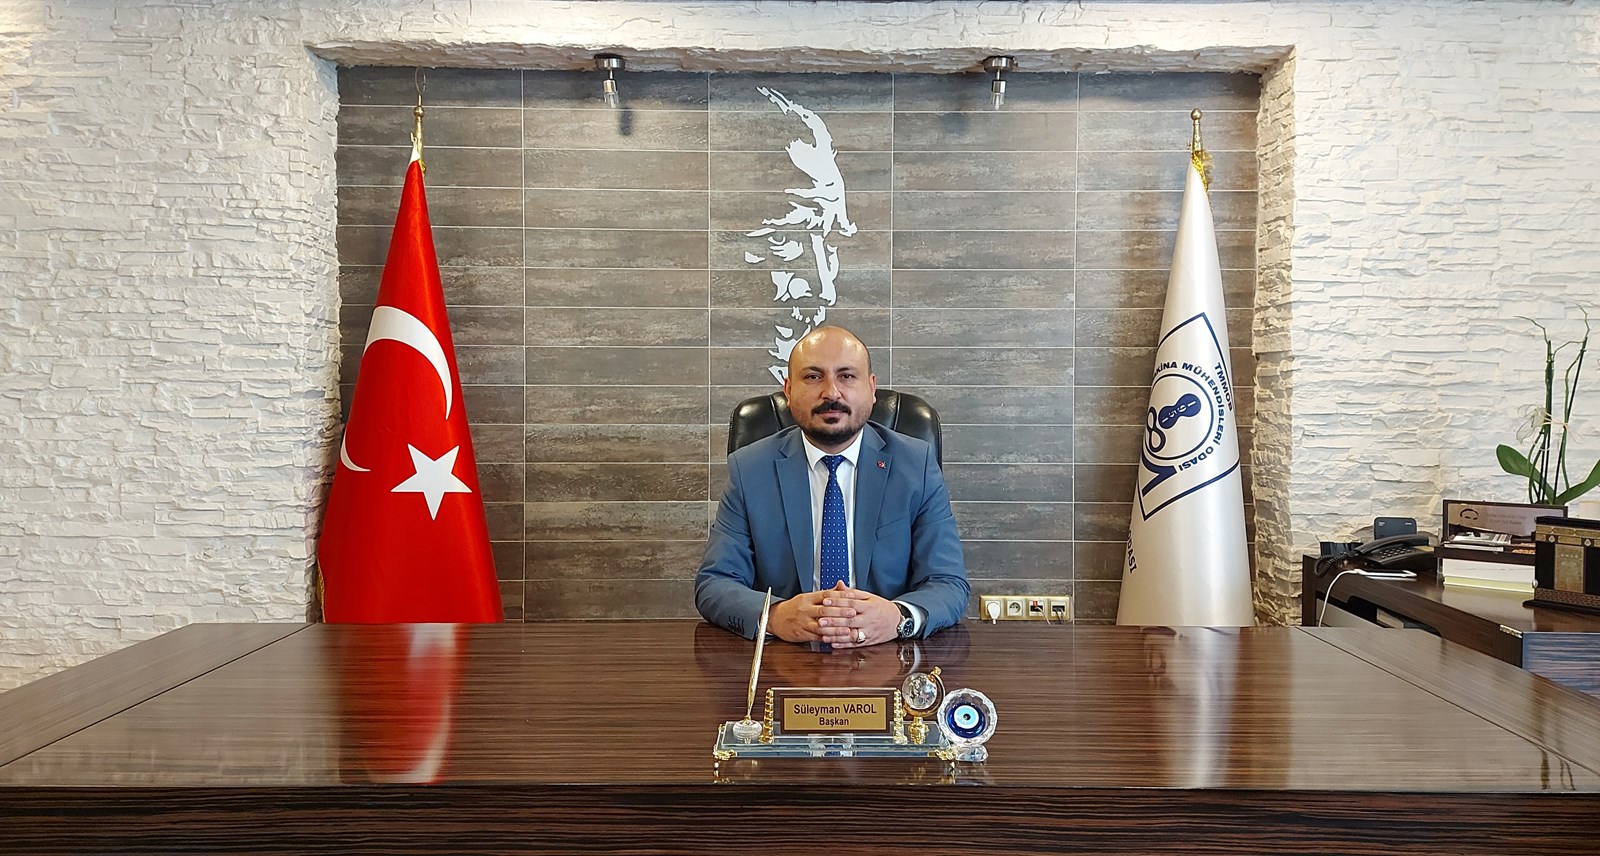 MMO Kayseri Şube Başkanı Süleyman VAROL, Berat Kandili ile ilgili aşağıdaki açıklamayı yapmıştır.